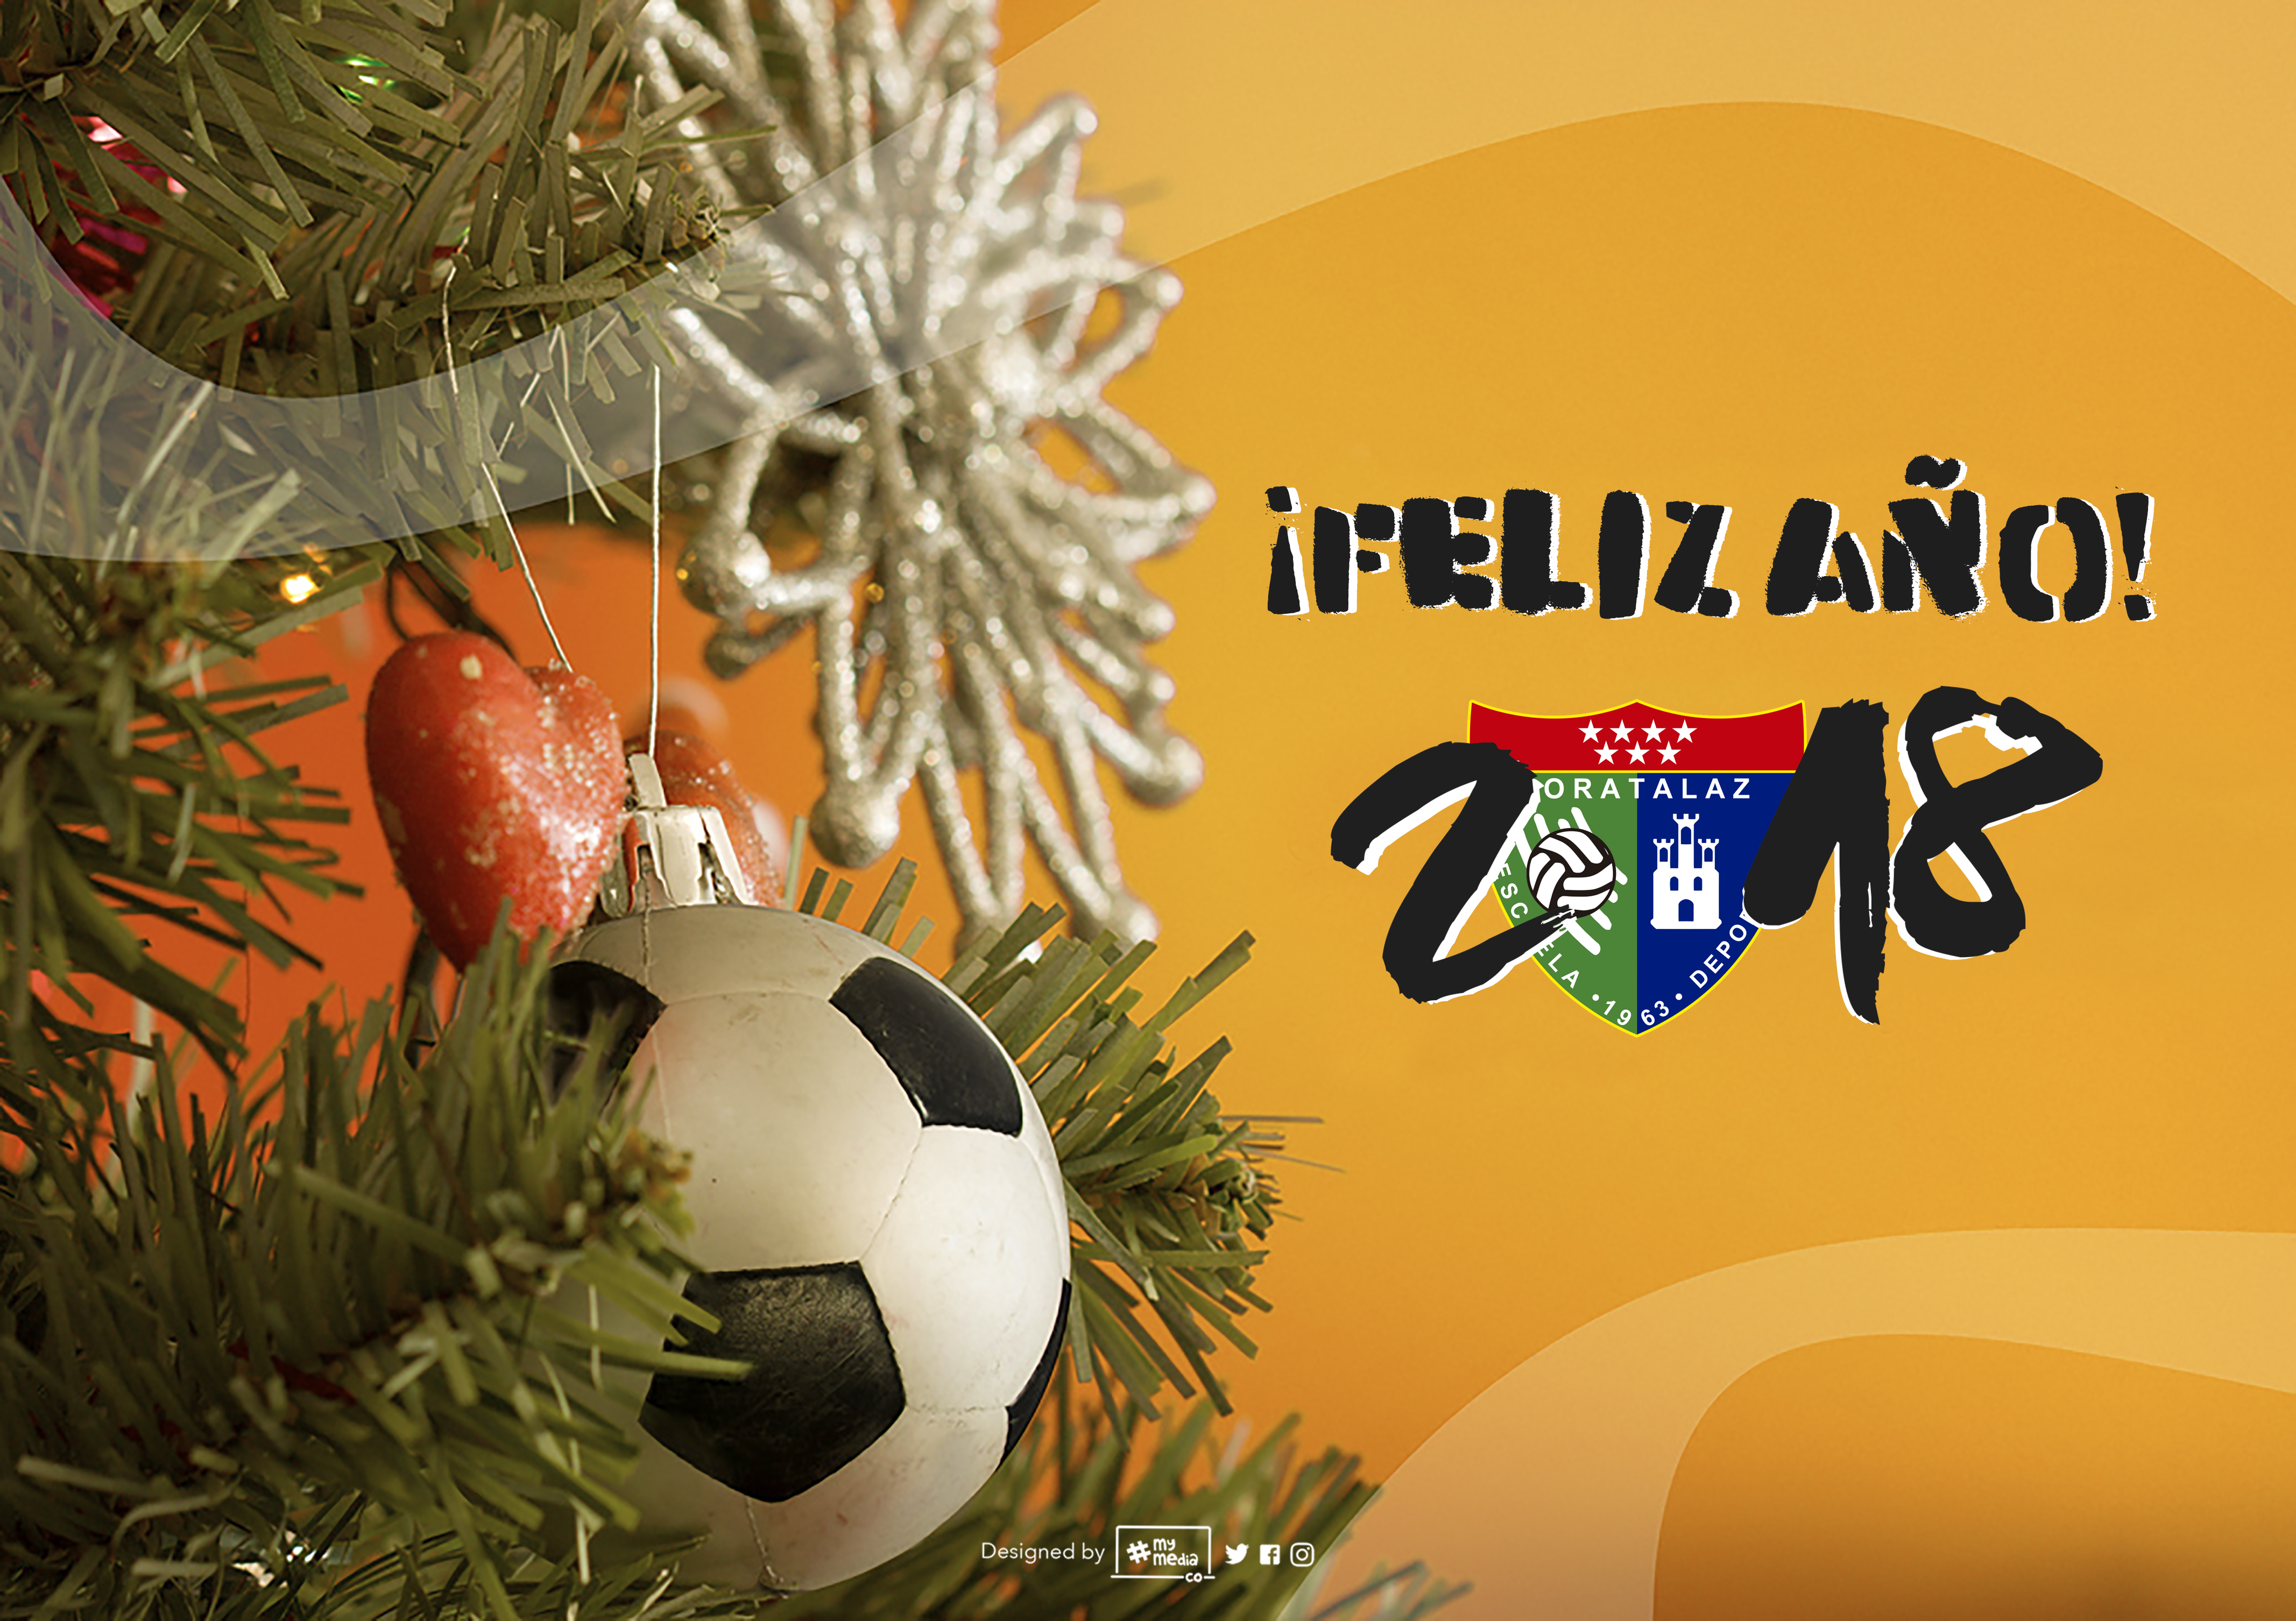 ¡La Escuela Deportiva Moratalaz os desea un Feliz 2018!